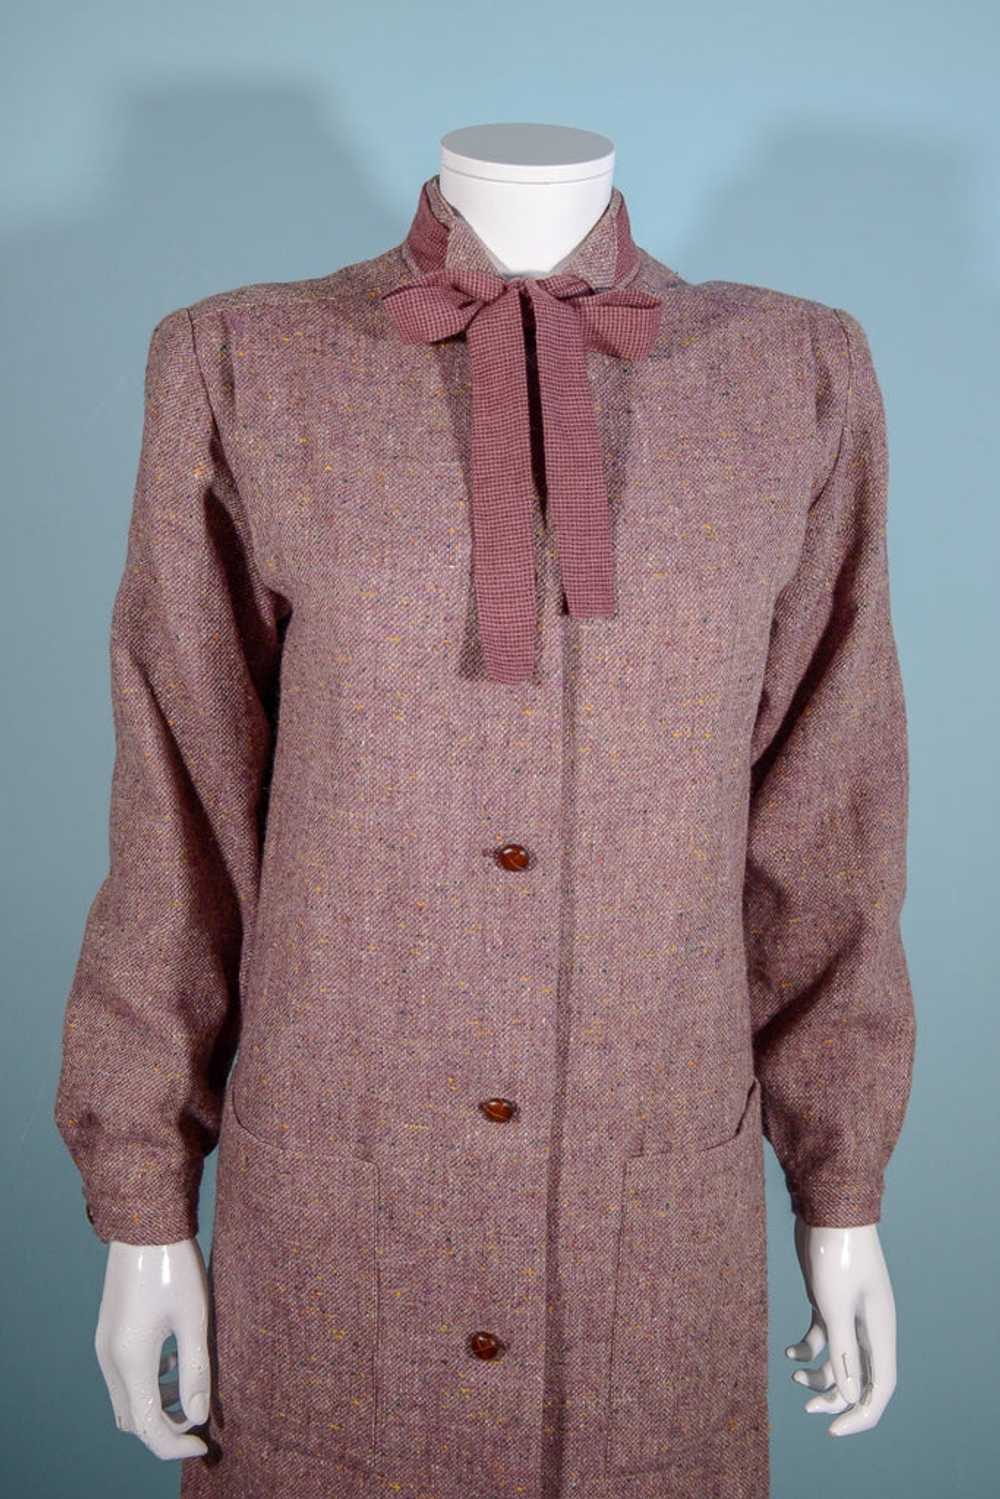 Vintage 70s Tweed Overcoat + Tie Neckline, Dark A… - image 1